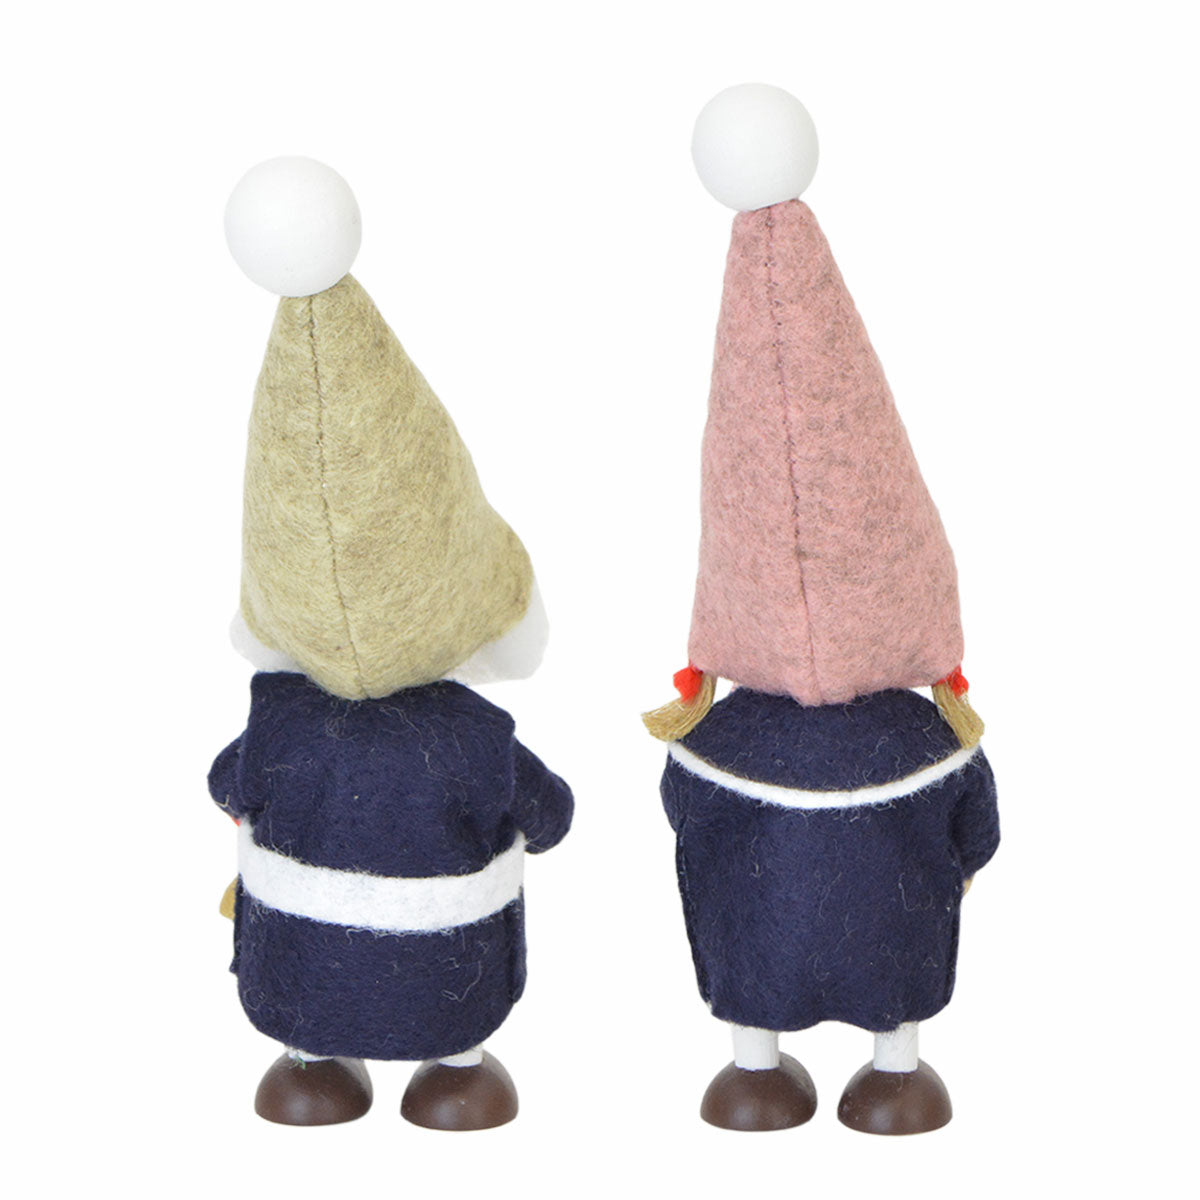 【北欧雑貨オリジナル】NORDIKA nisse ノルディカ ニッセ クリスマス 木製人形 ( 『ハーモニーニッセ』 )